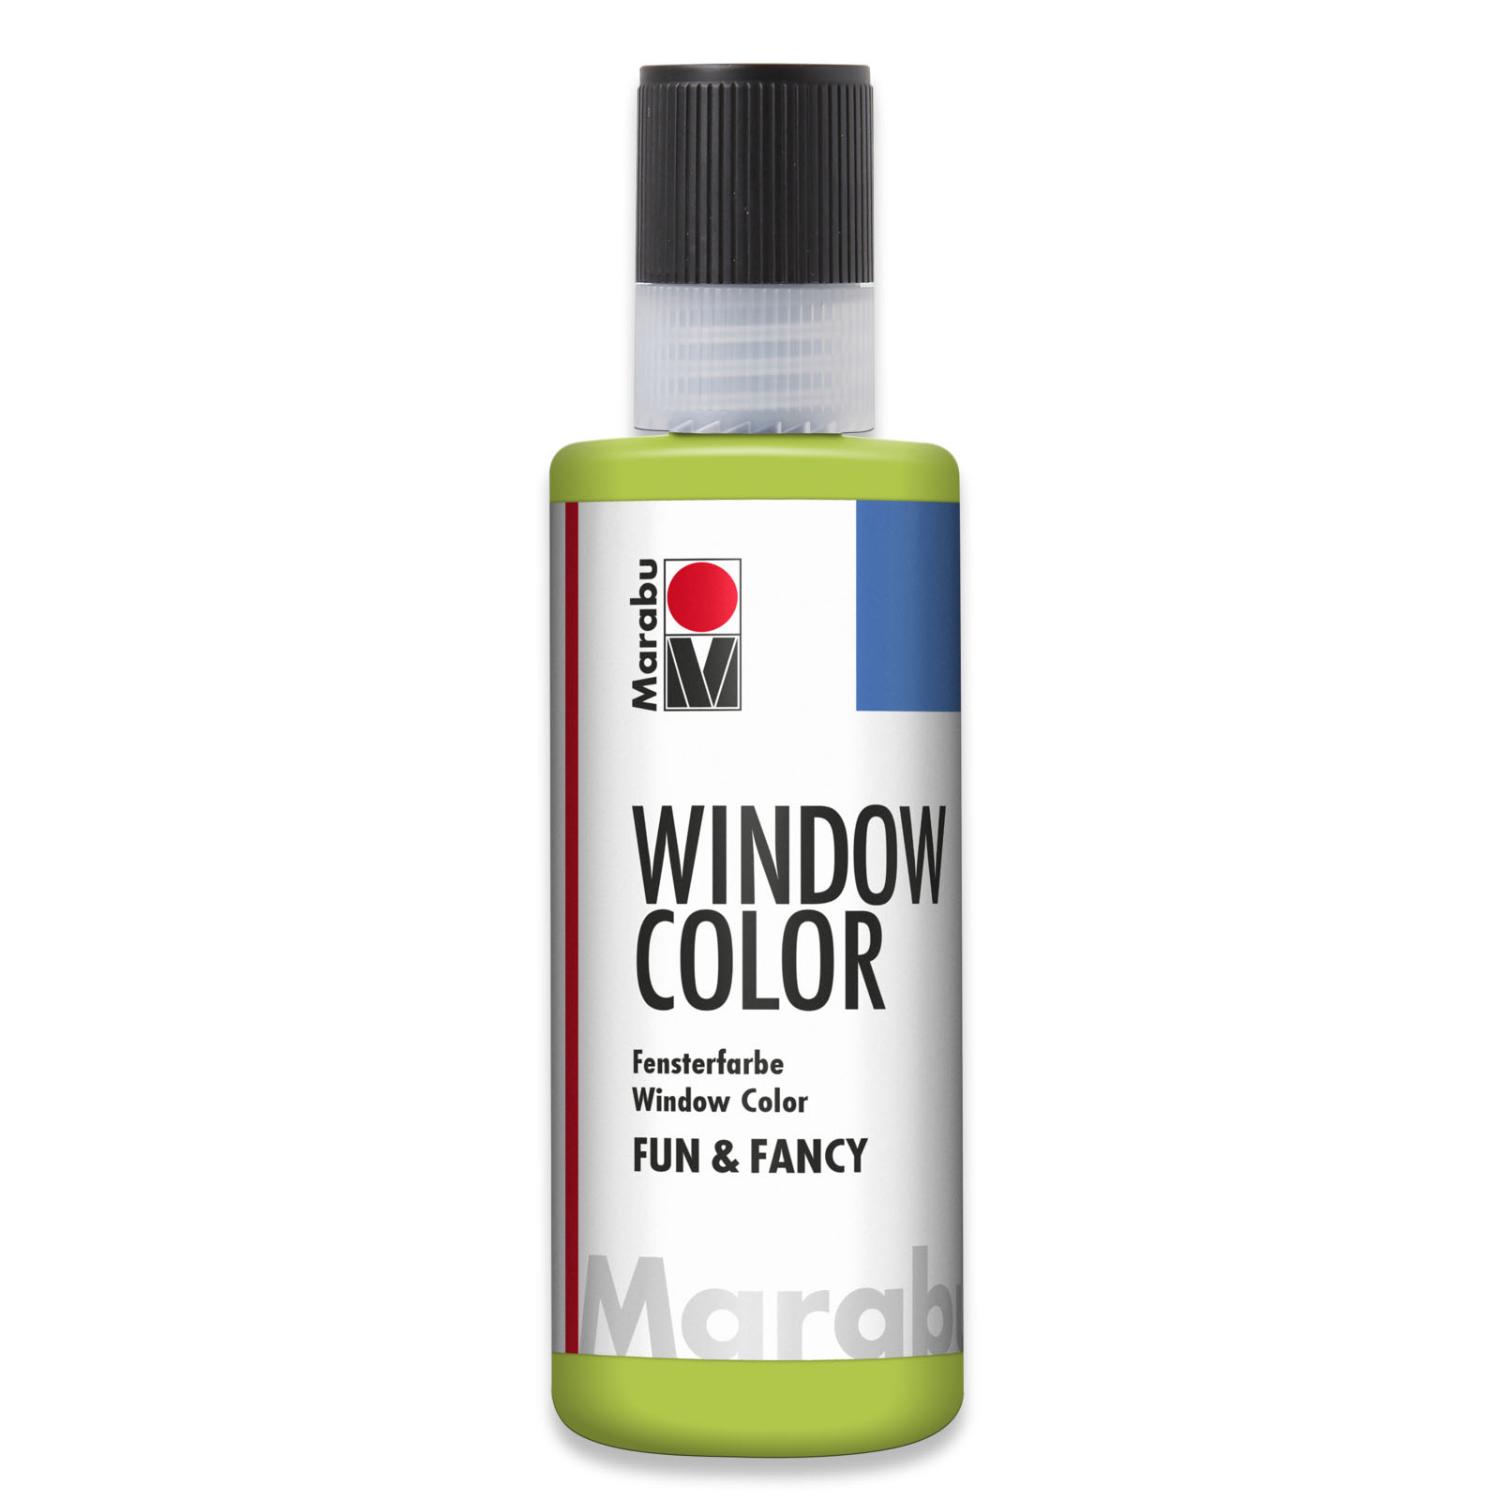 Marabu Window Color fun & fancy, 80 ml, reseda (gelbgrn)